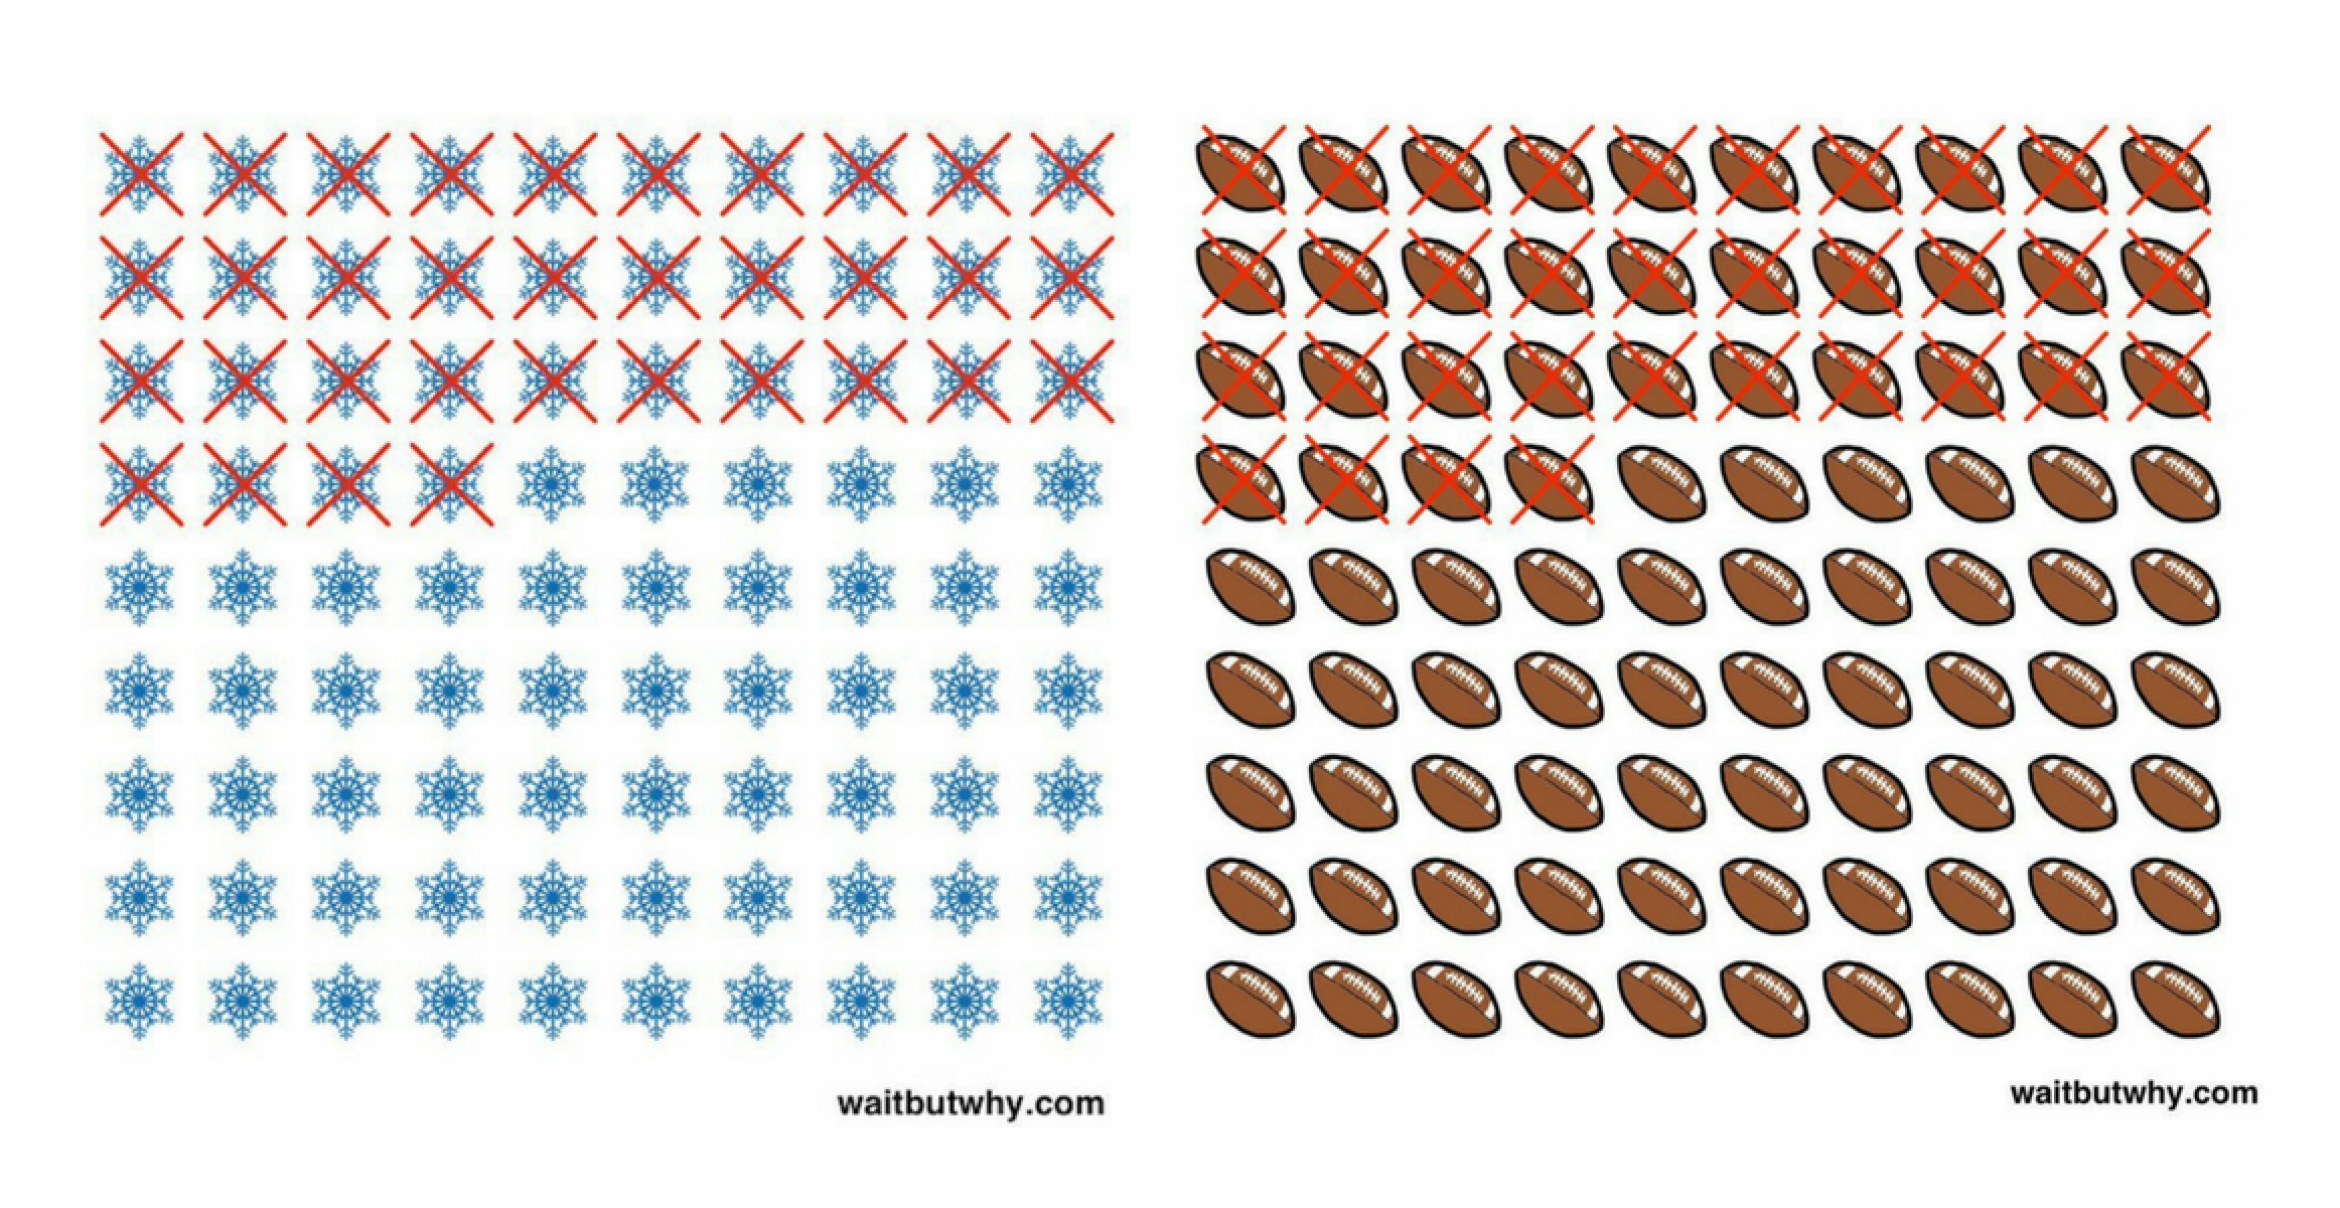 “Wait But Why“: Die einfachen Grafiken von Tim Urban sollen uns daran erinnern, wie kurz das Leben ist